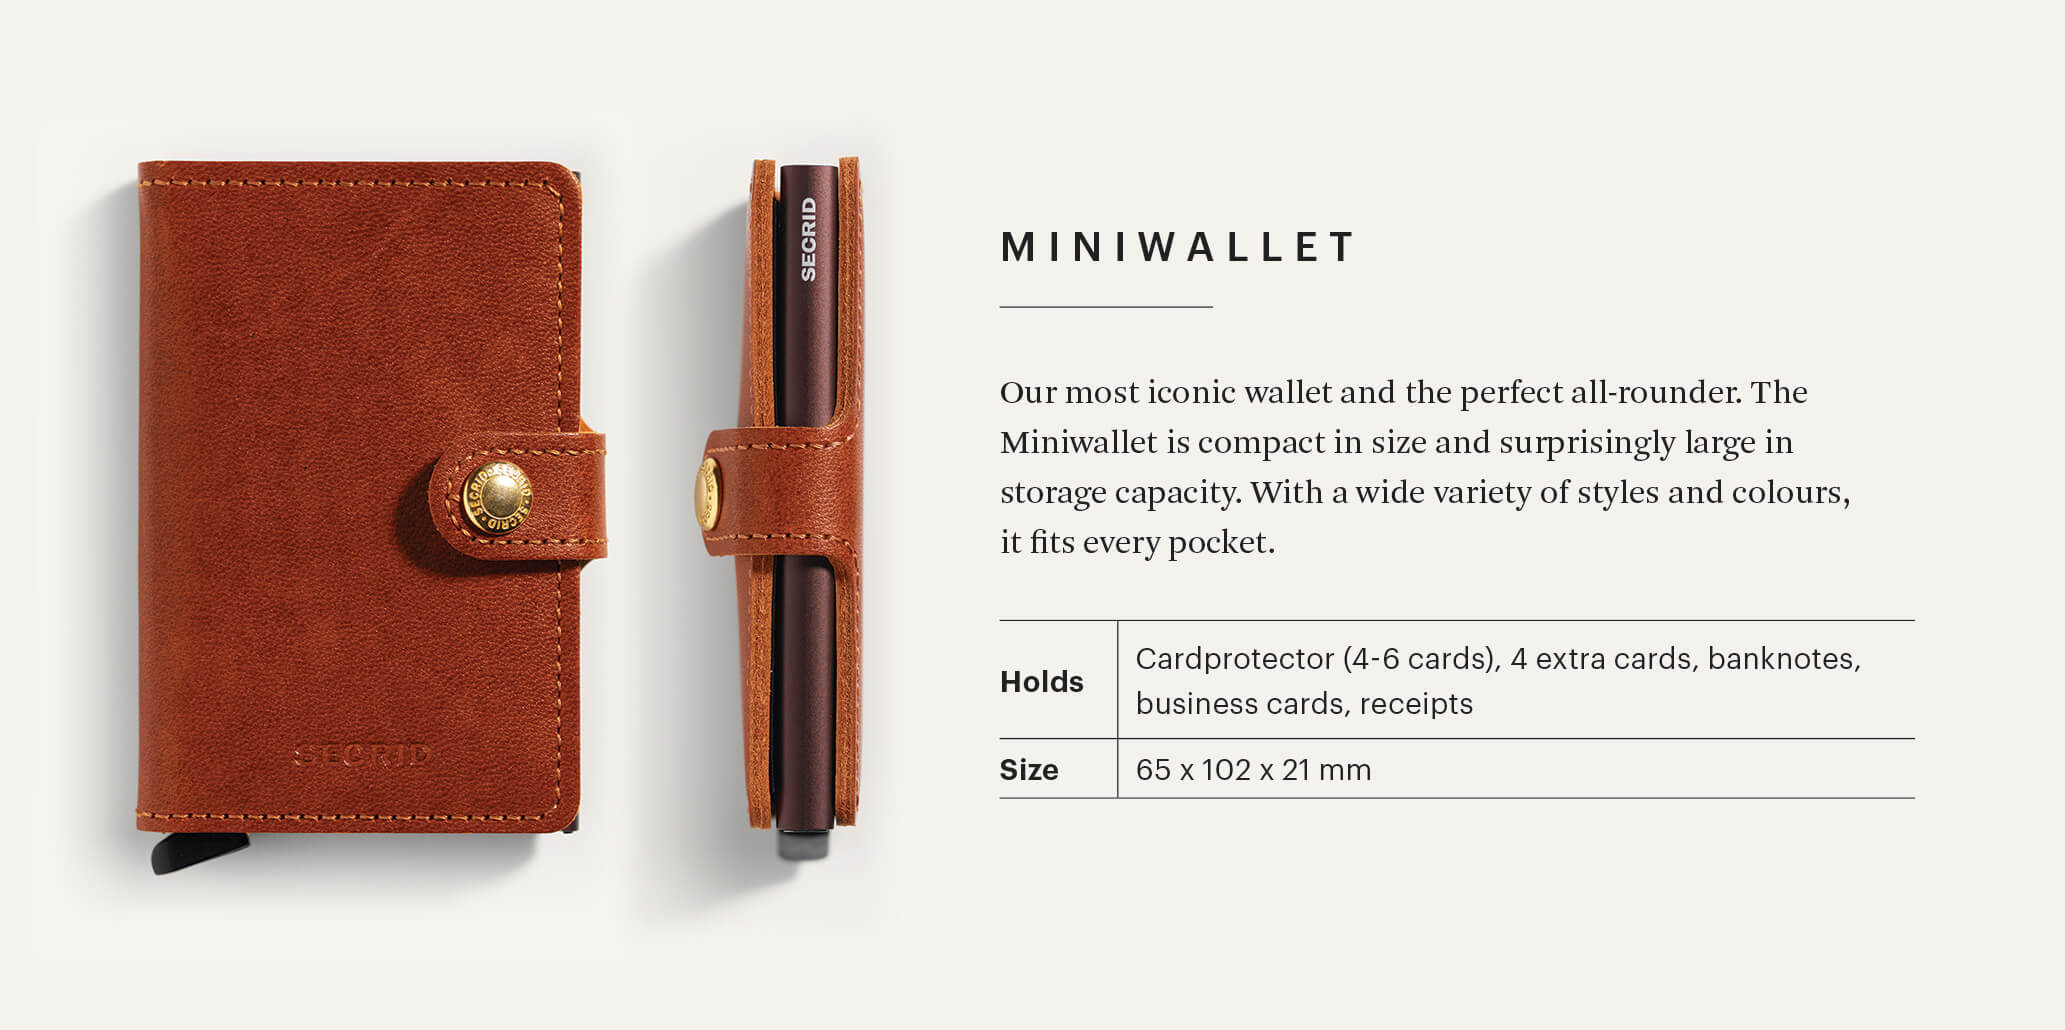 Miniwallet | Crisple Pumpkin | by Secrid Wallets - Lifestory - Secrid Wallets